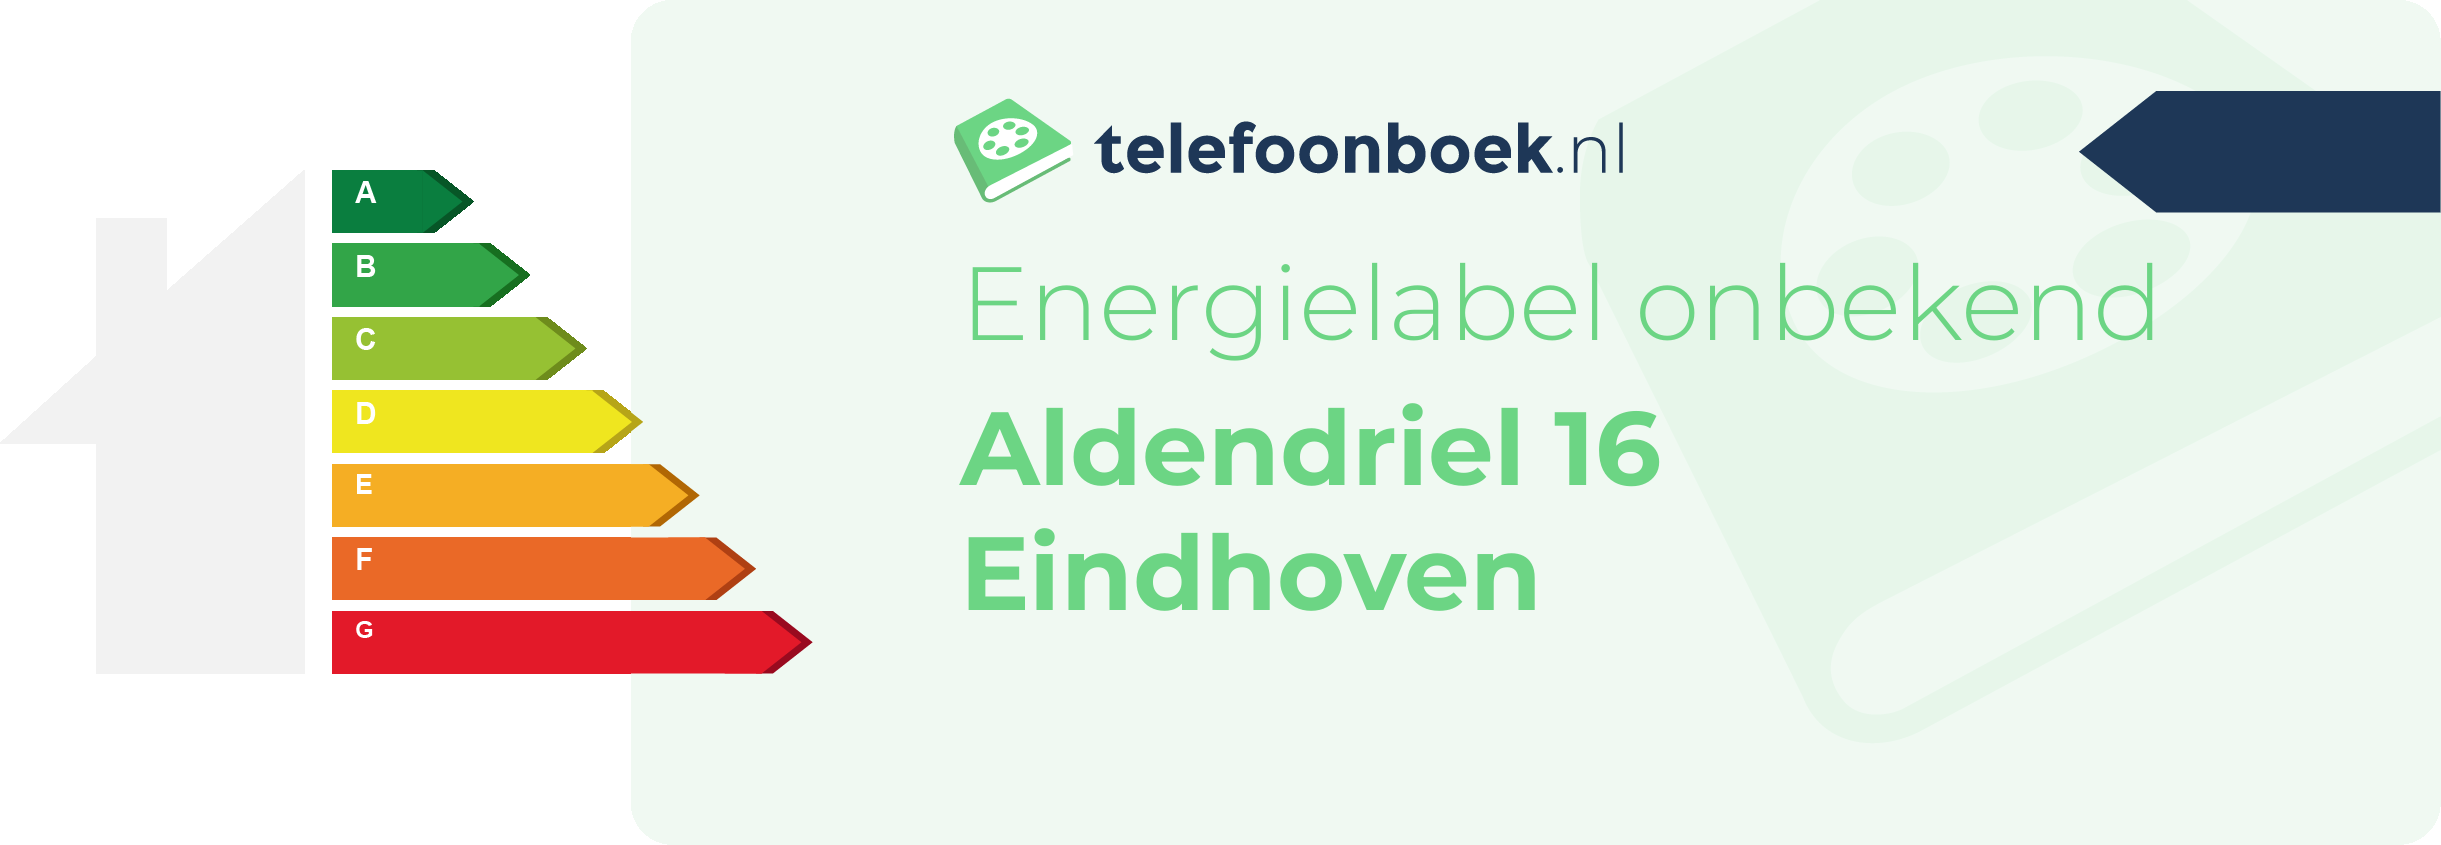 Energielabel Aldendriel 16 Eindhoven